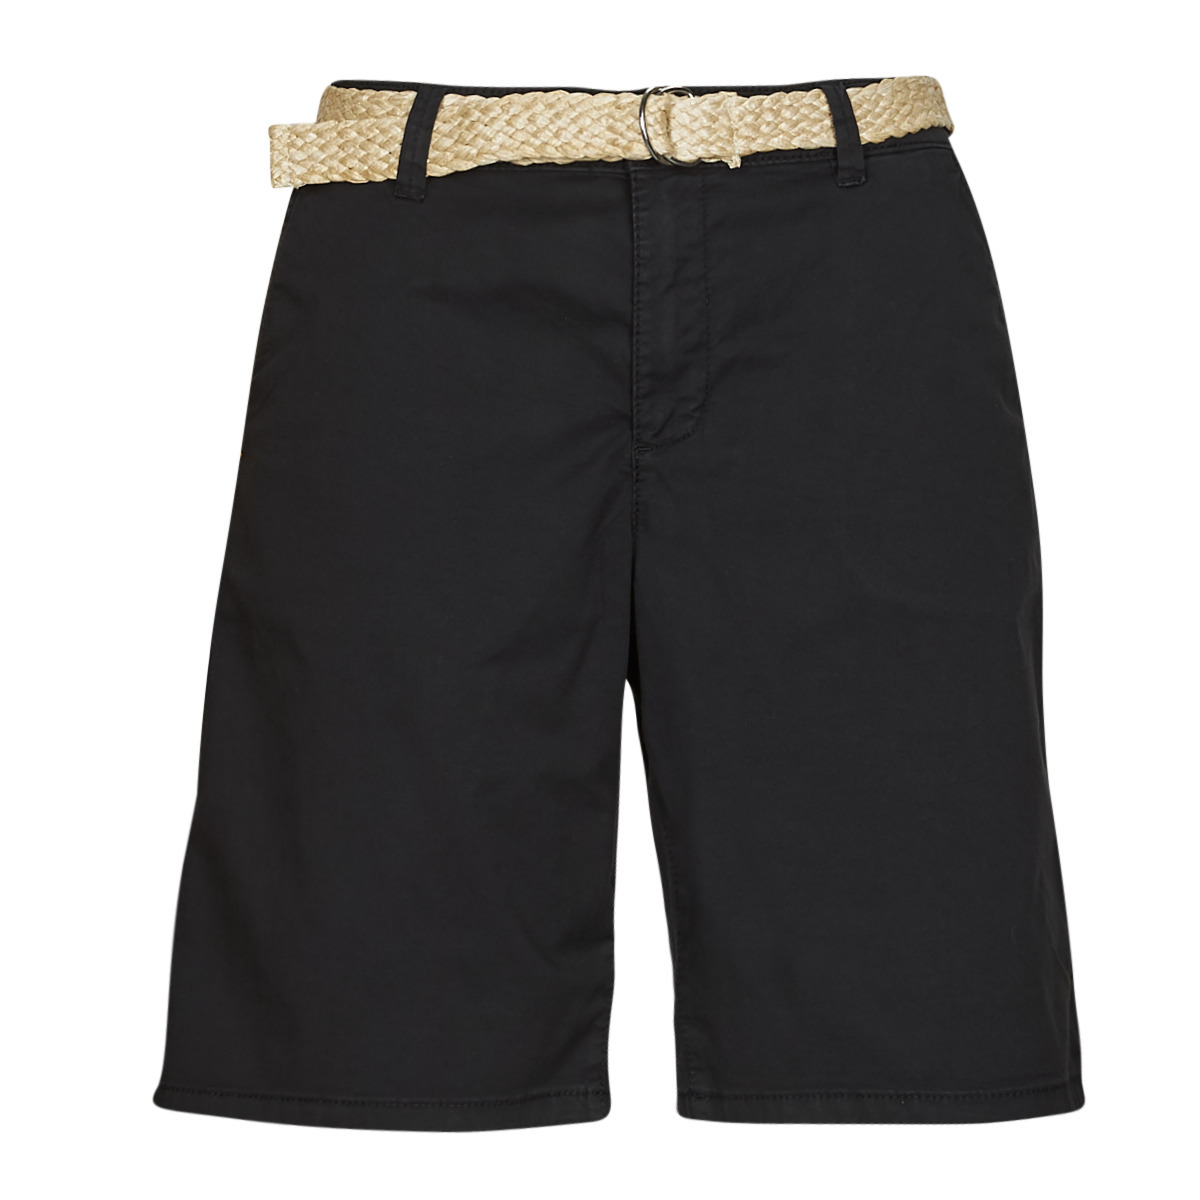 Shorts in Black Esprit - Spartoo GOOFASH